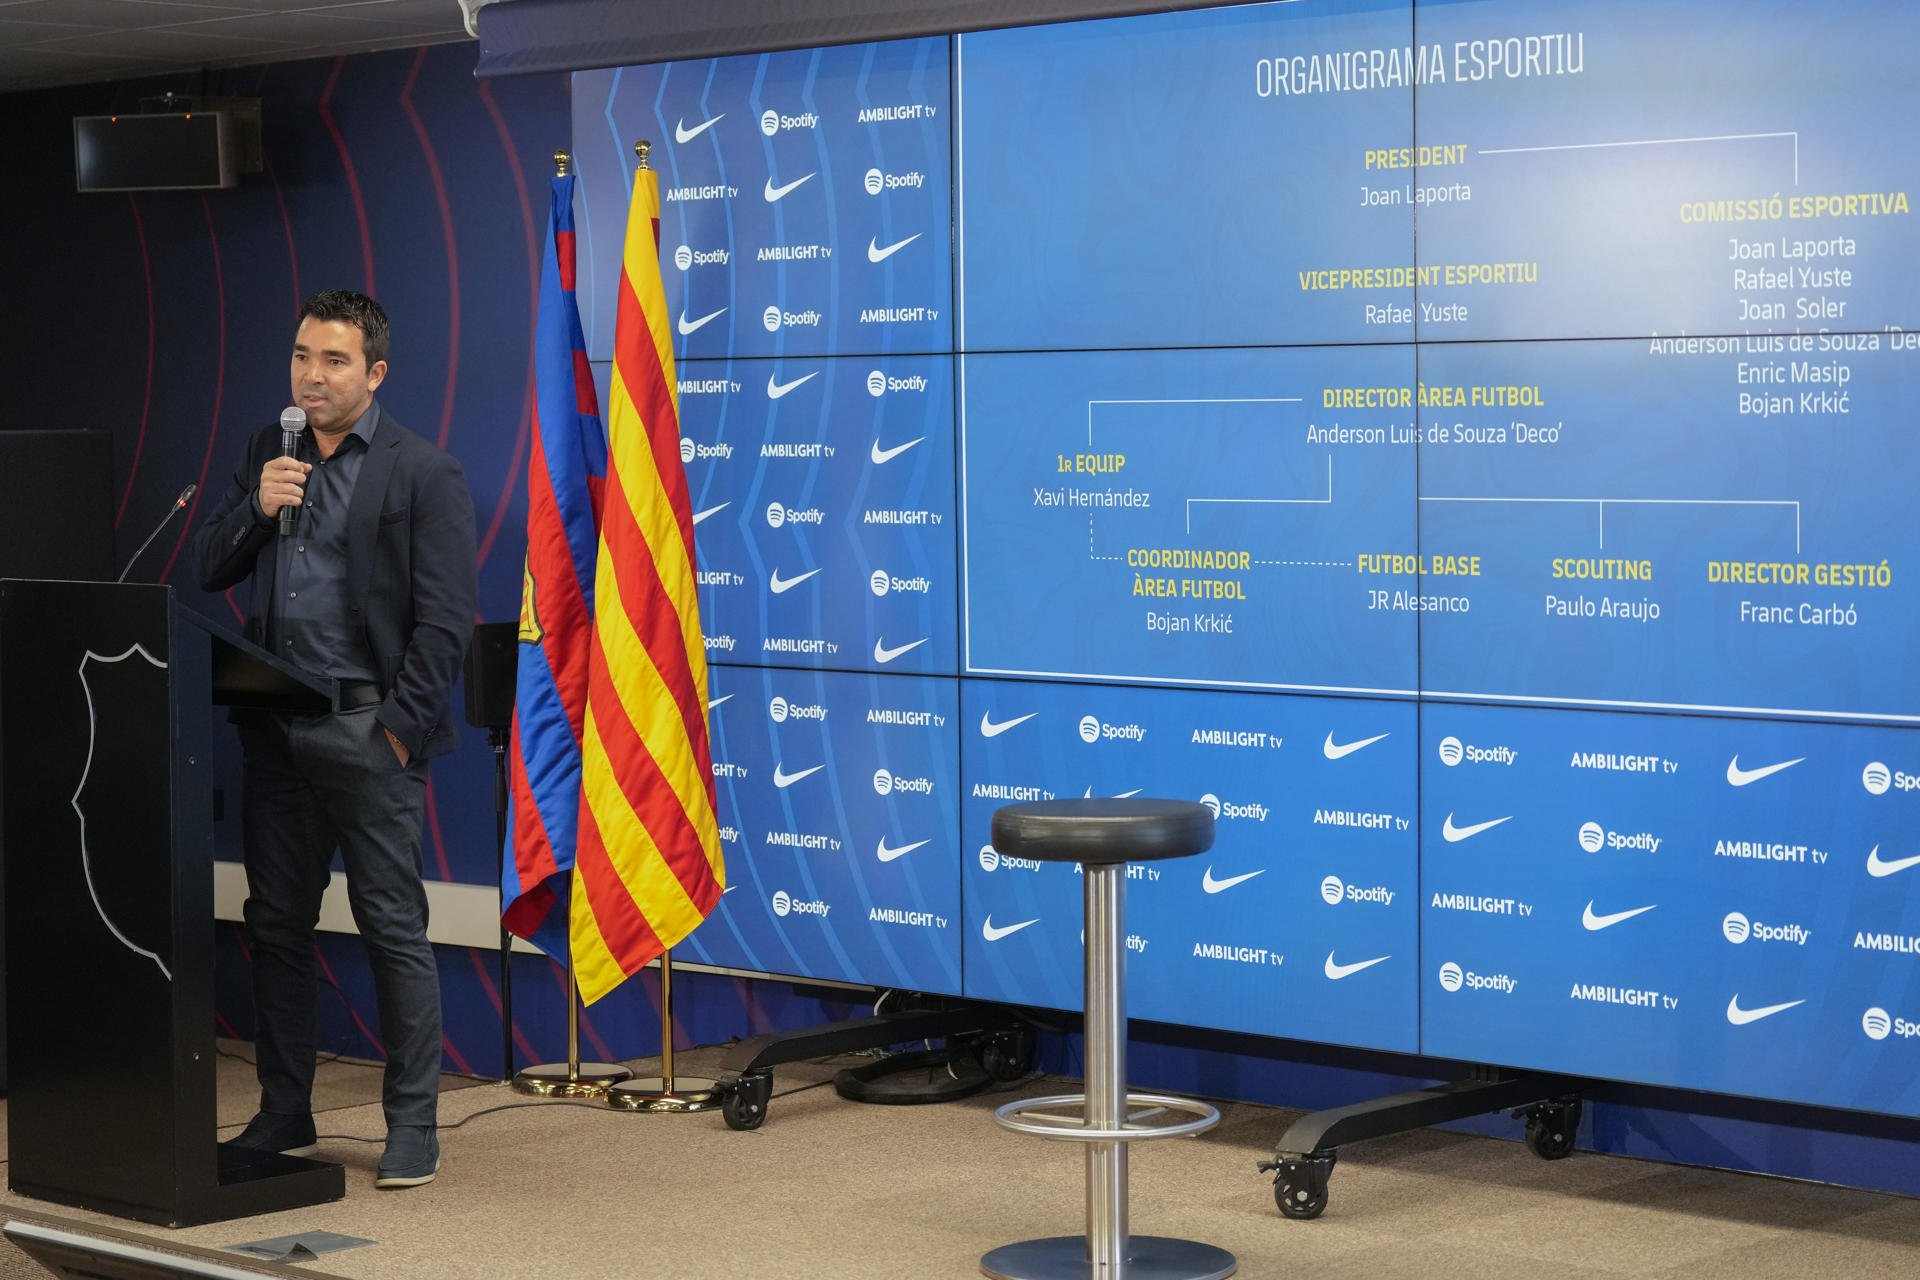 Deco no perdona a Xavi Hernández, que ayudó a Pep Guardiola a echarlo del Barça